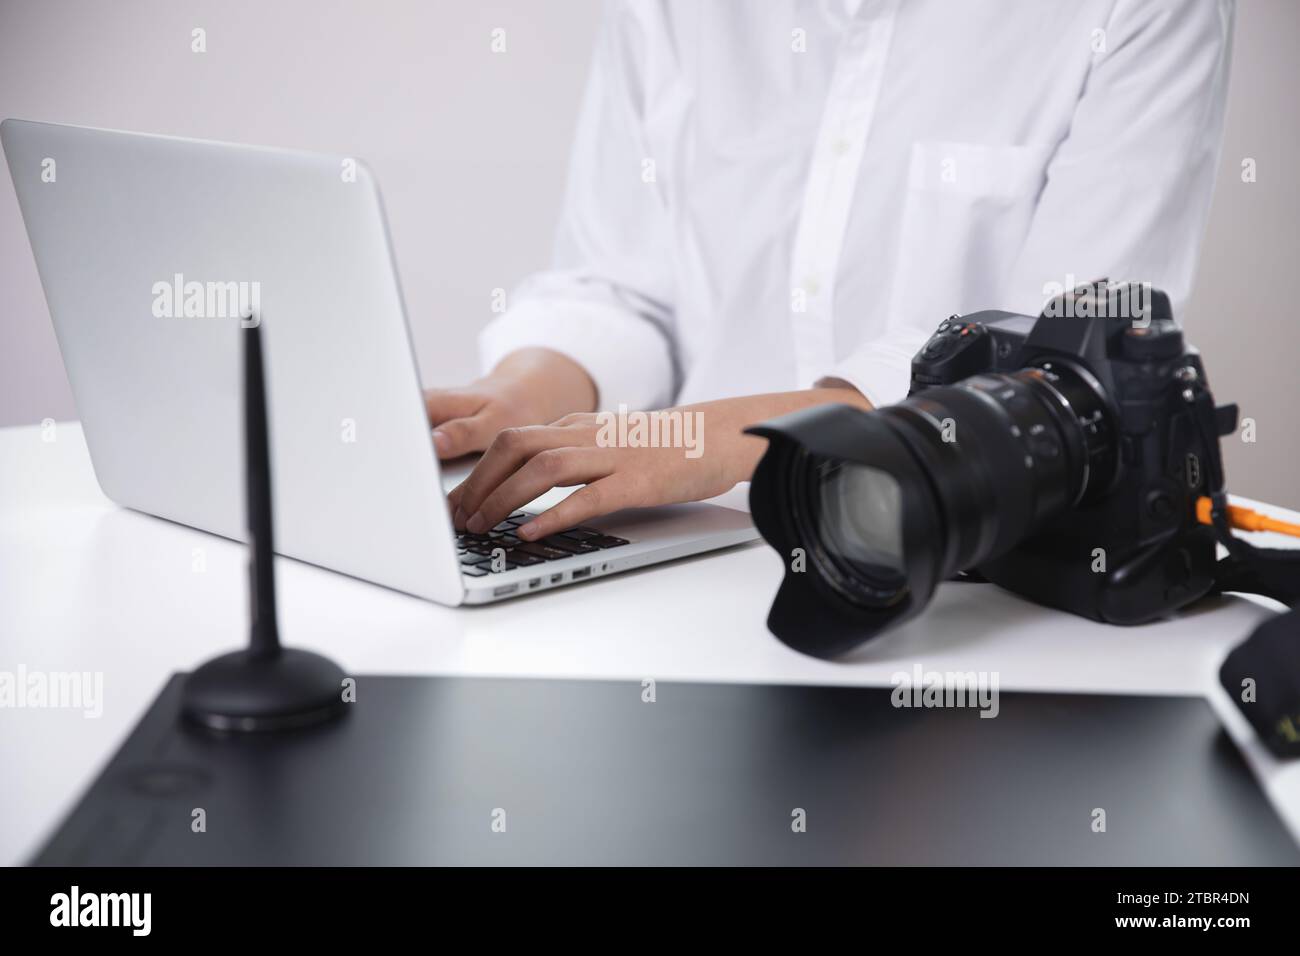 Fotografin, Bloggerin, die mit ihrer Kamera aufgenommene Fotos mit einem Laptop überprüft Stockfoto